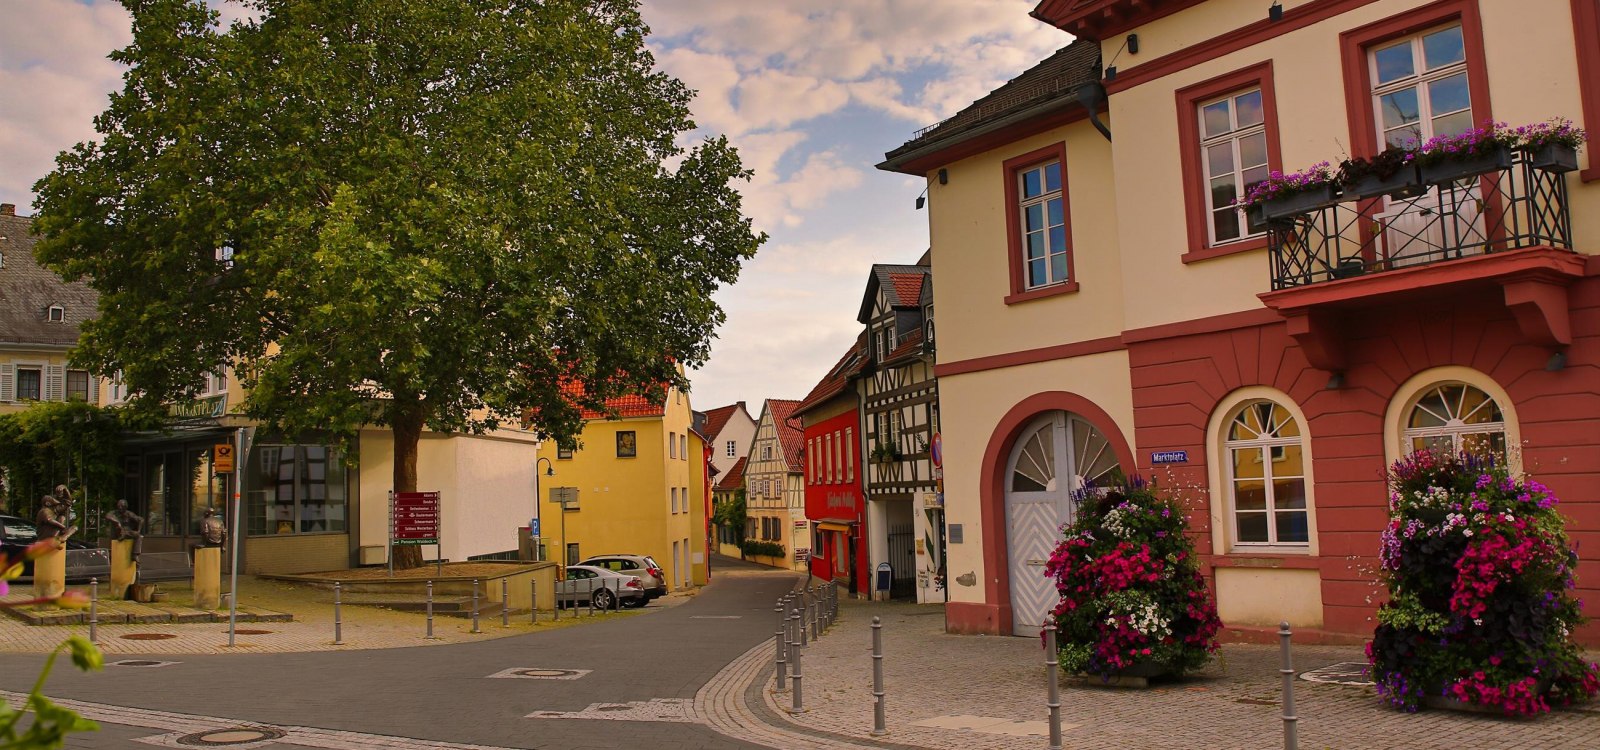 Ober-Ingelheim market square/entrance to Altegasse